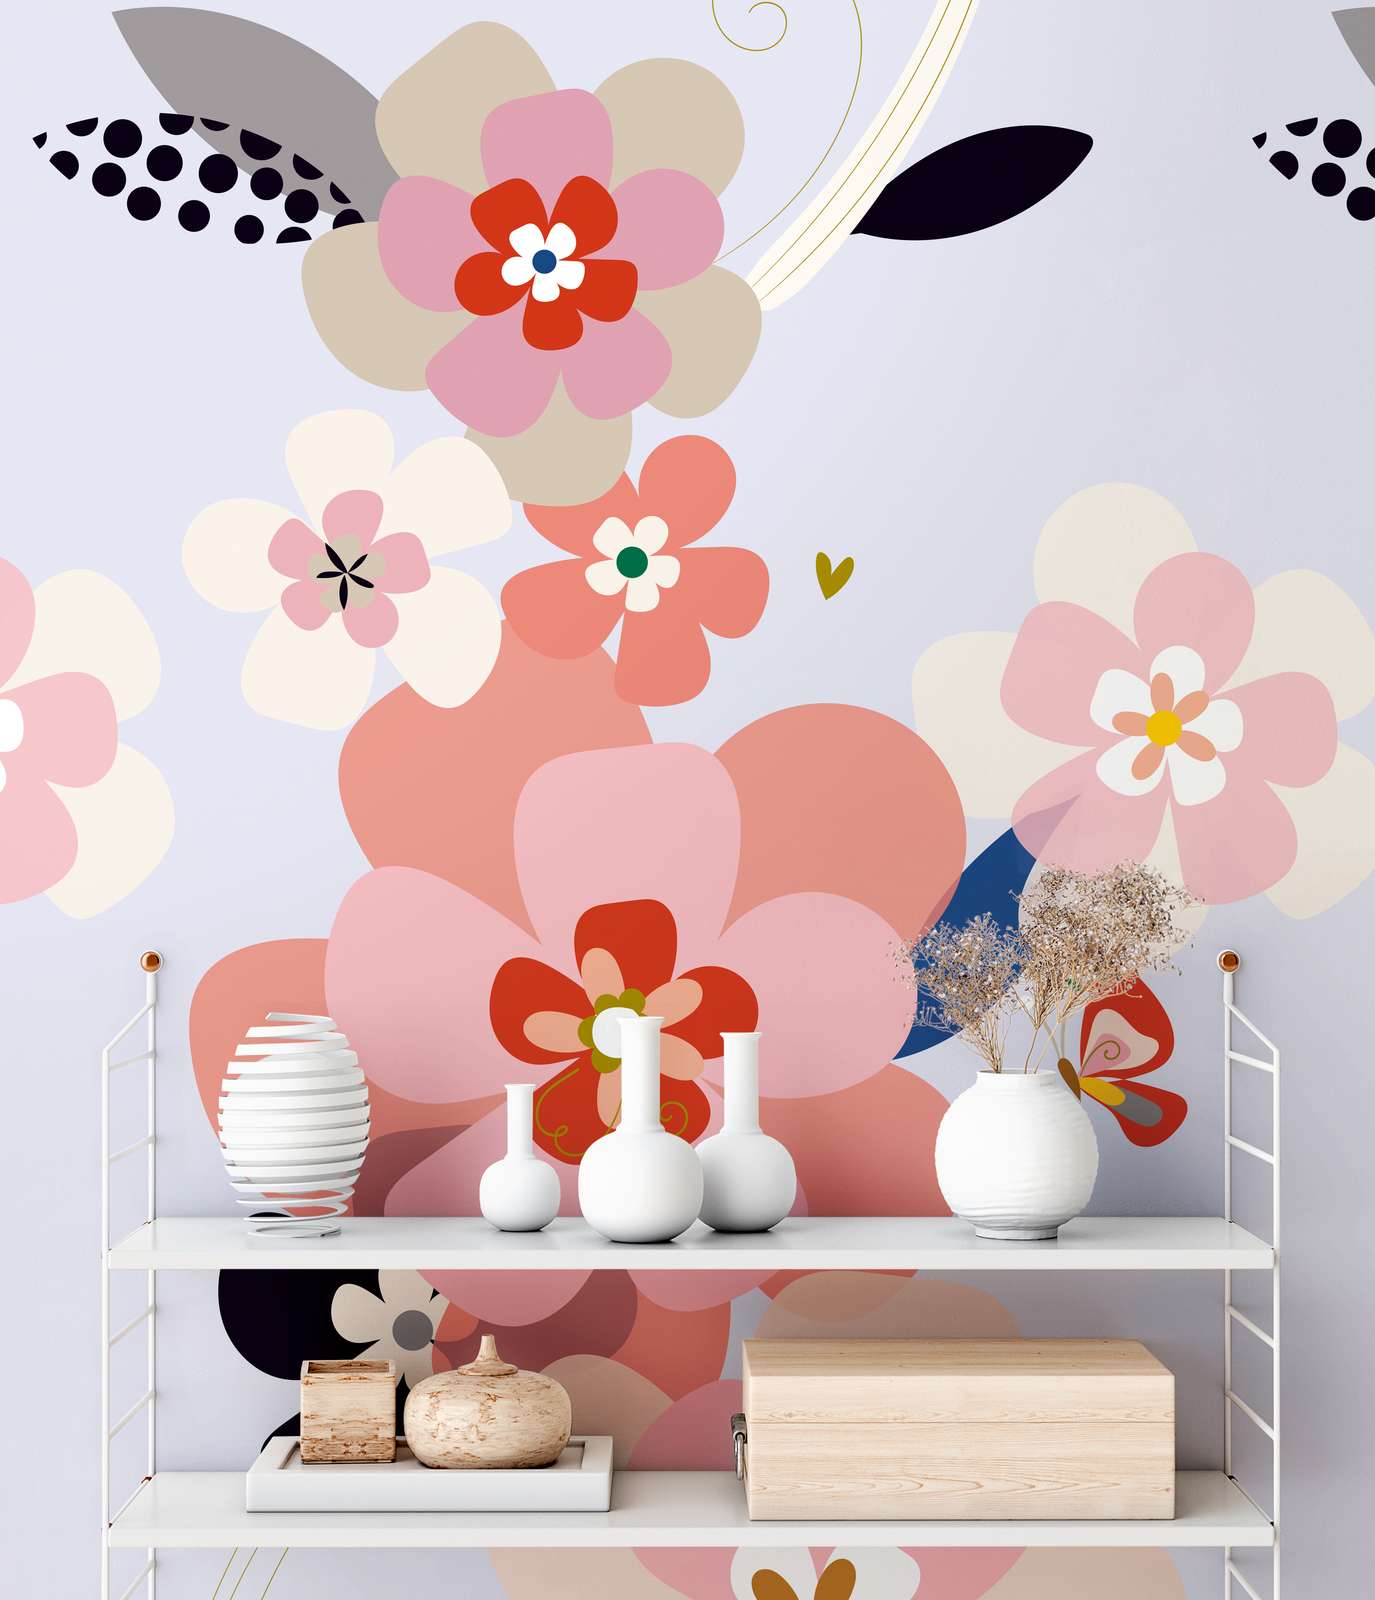             Grand papier peint à motifs floraux de style minimaliste - multicolore, rose, lilas
        